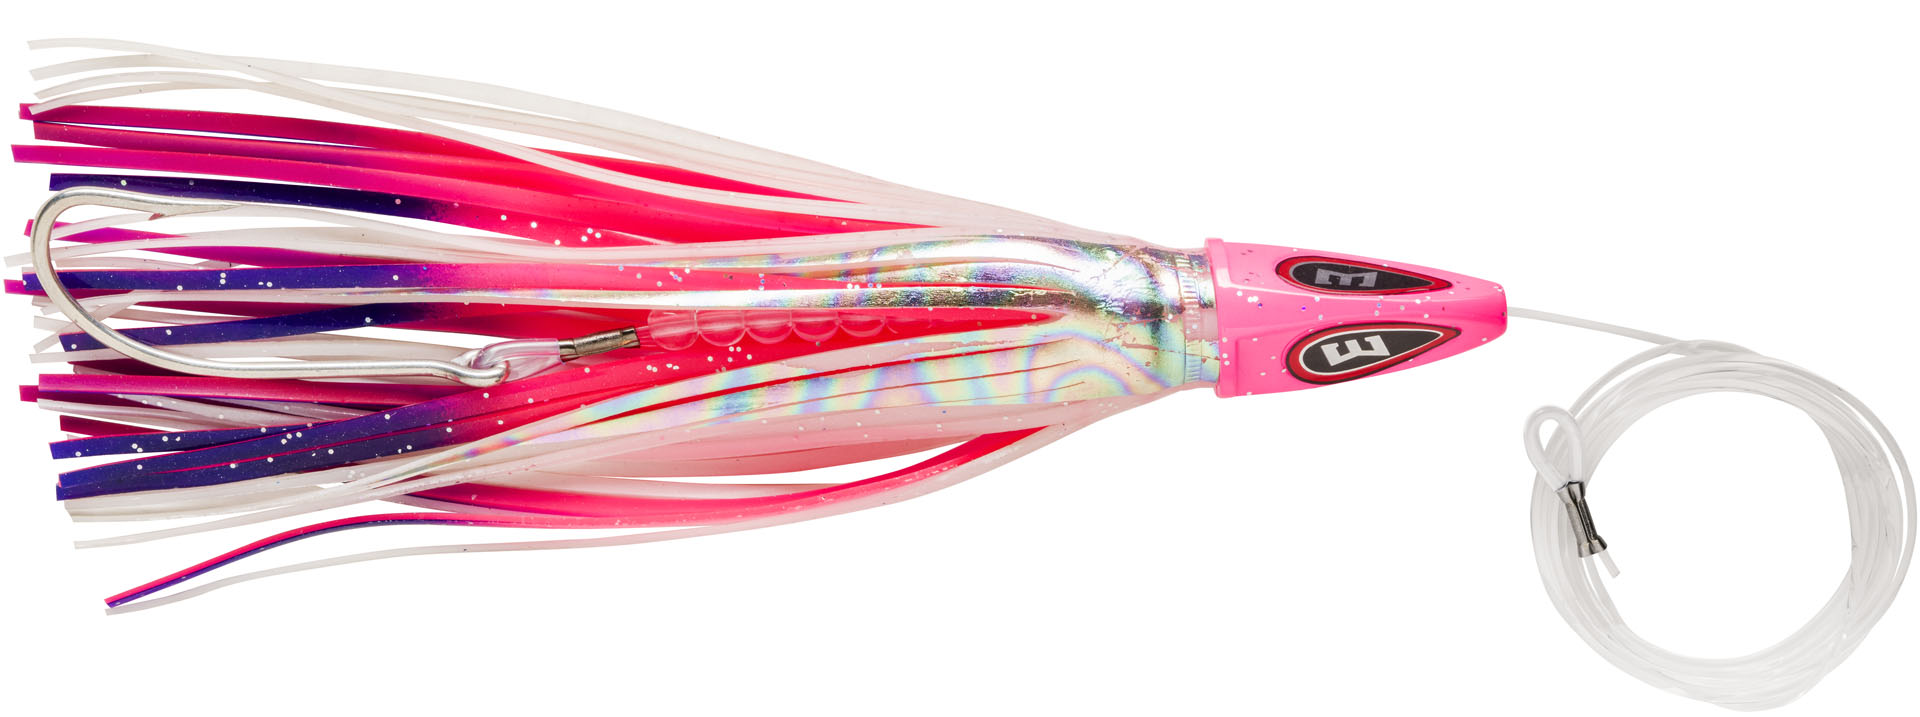 Bas de ligne Mer Williamson Hspeed Tuna Catcher Rig 19cm (99g) (4 pcs) - Candy floss